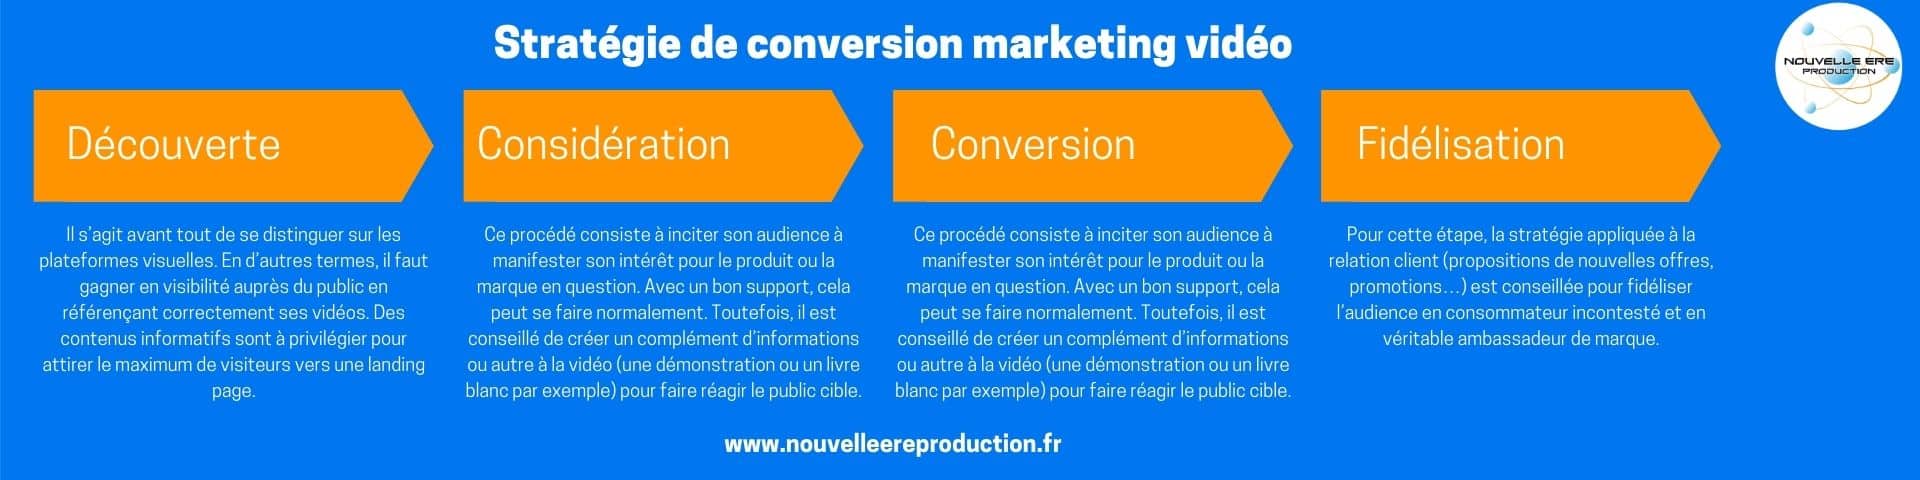 Stratégie de conversion marketing vidéo